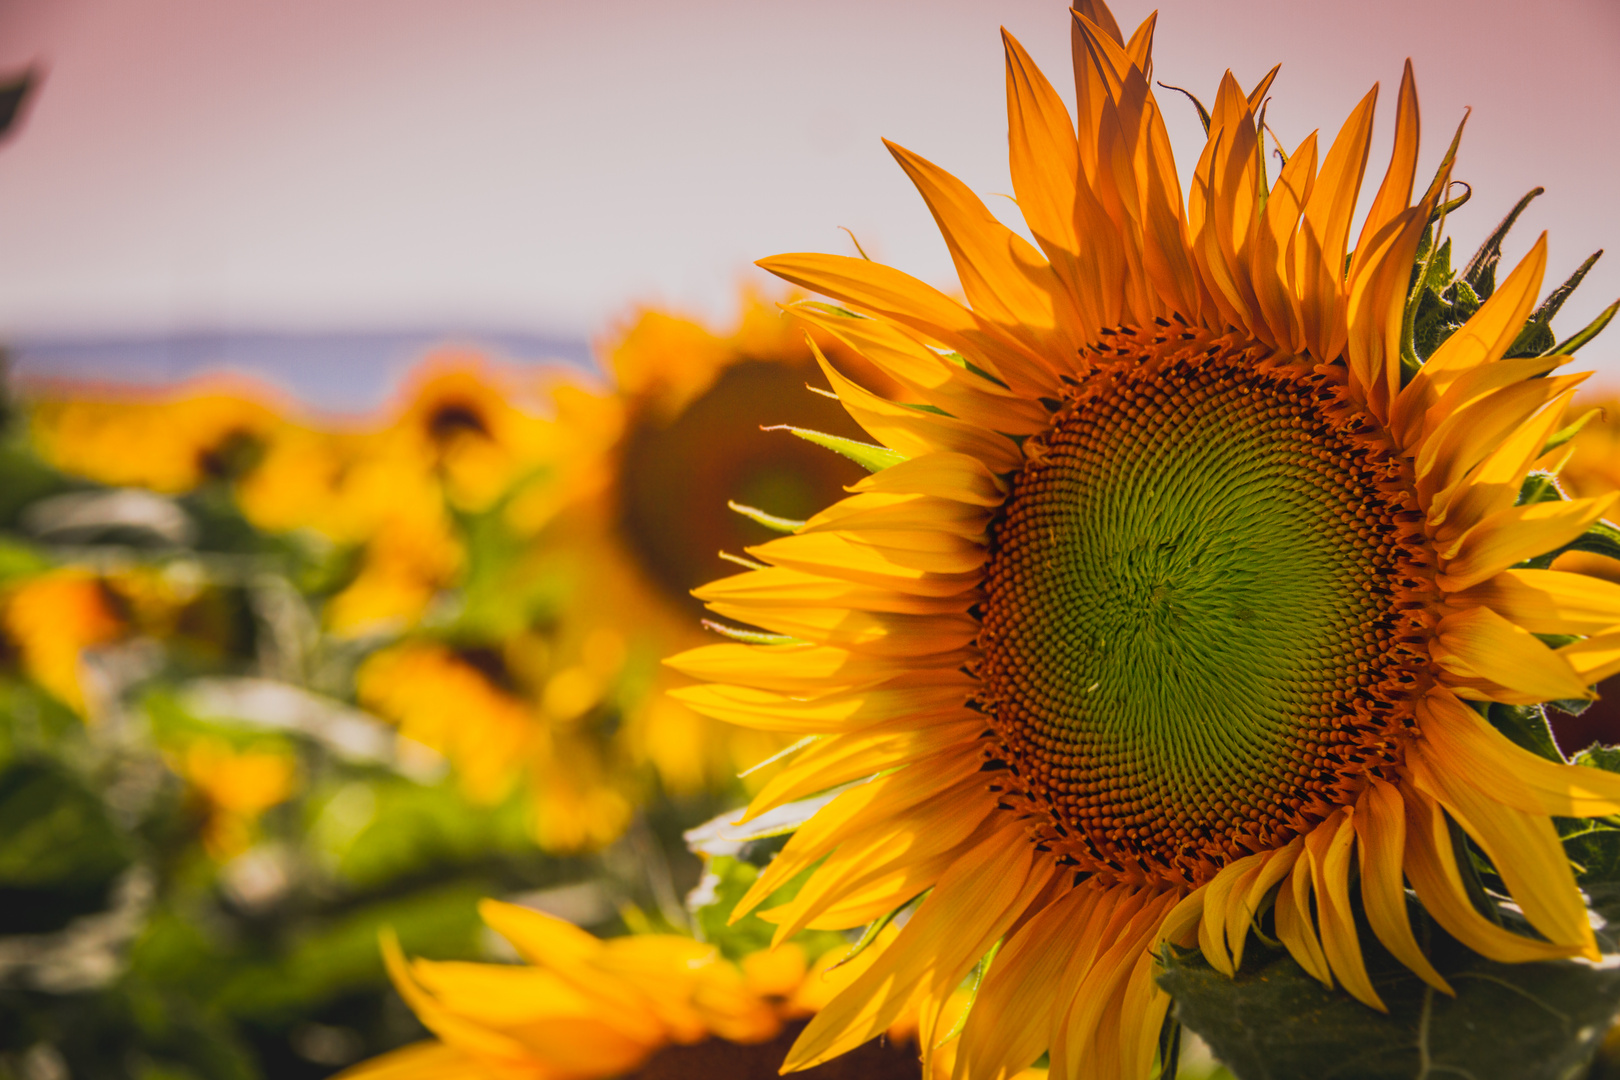 Summertime - Sunflower time